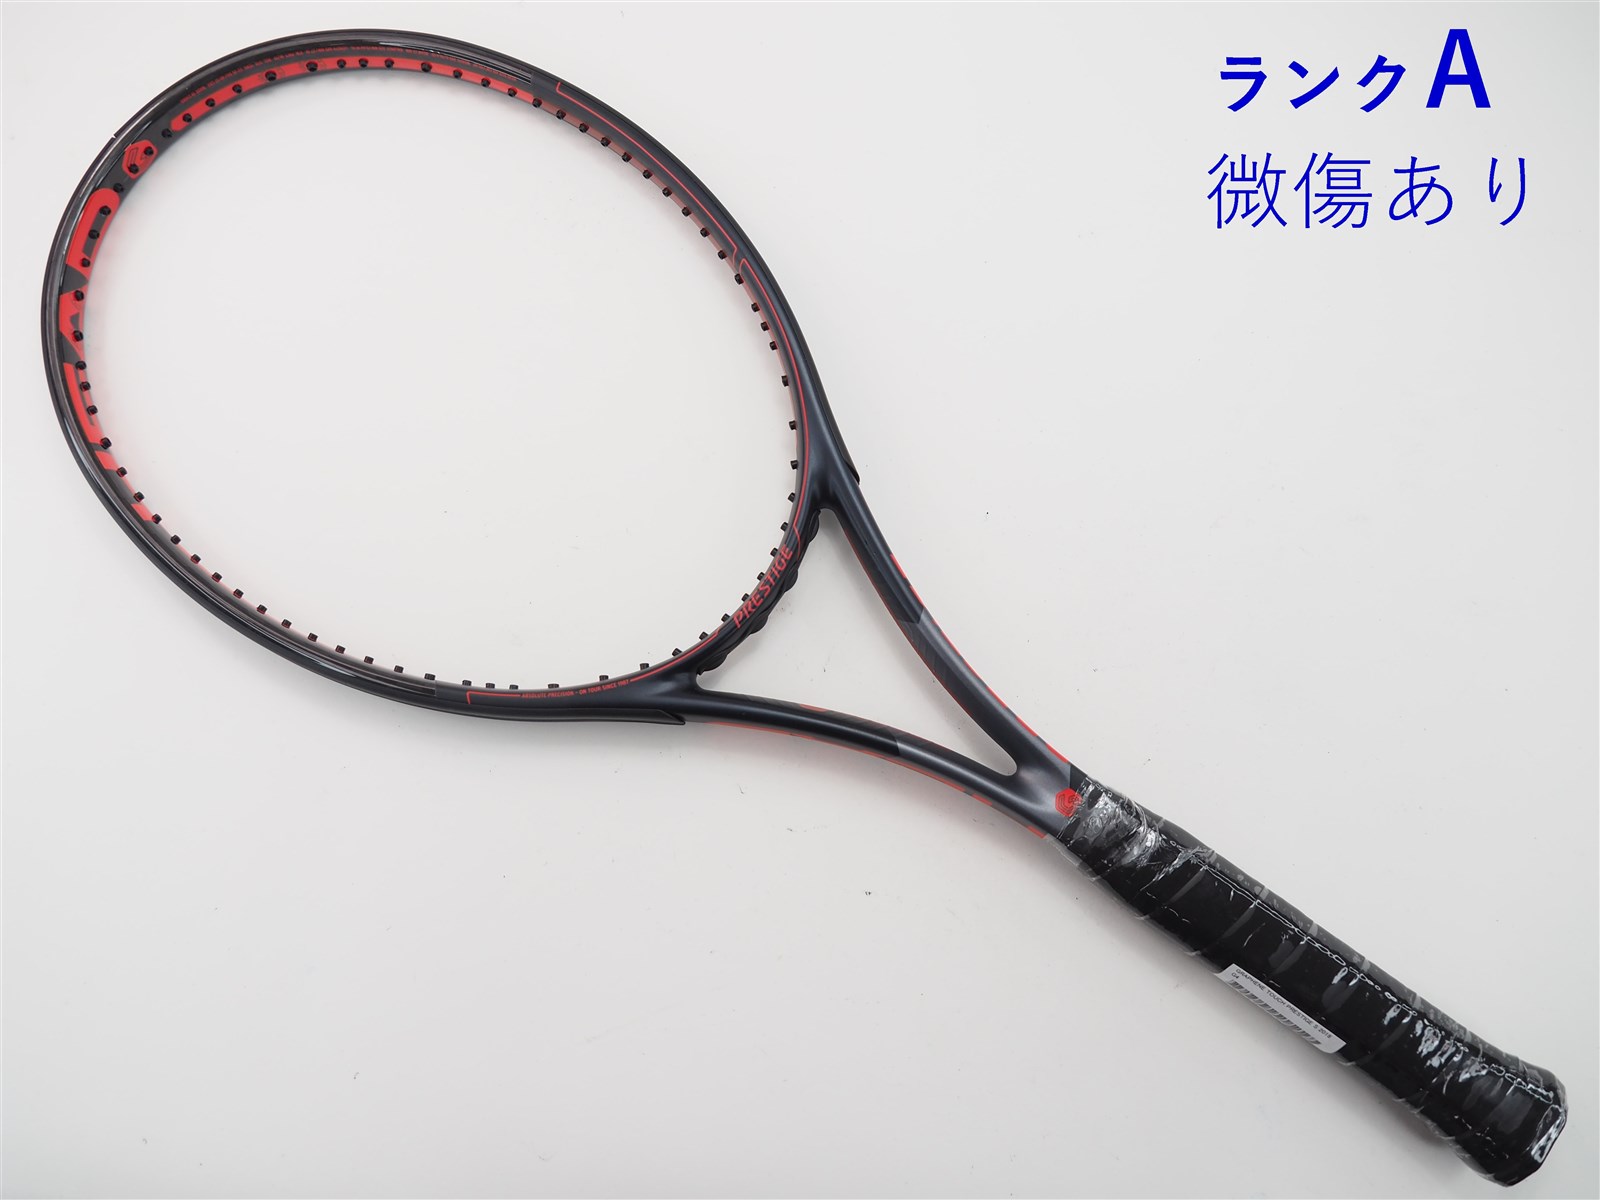 テニスラケット プリンス エックス 100 ツアー ジャパンリミテッド